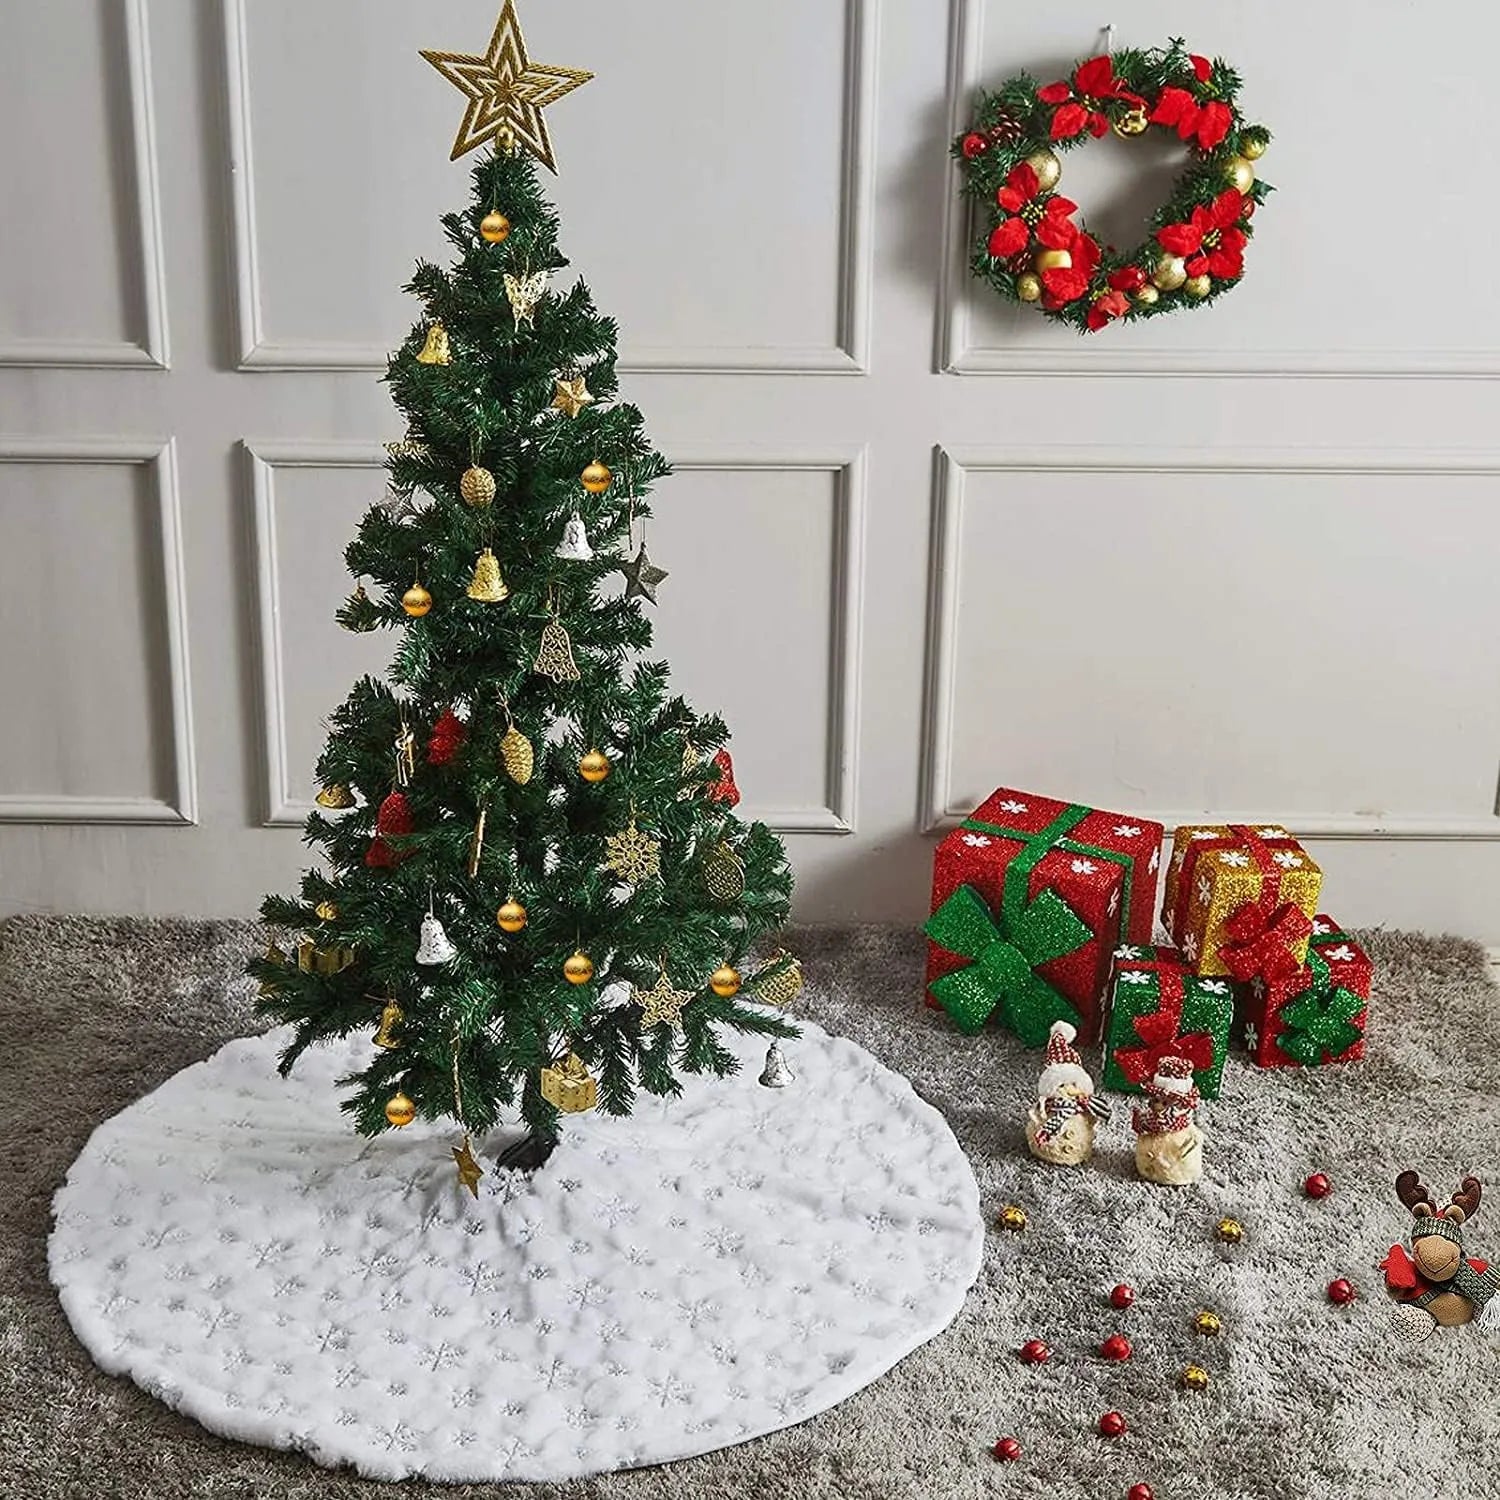 Saia de Árvore de Natal Branca - Toque Macio e Durabilidade para Transformar sua Decoração Natalina